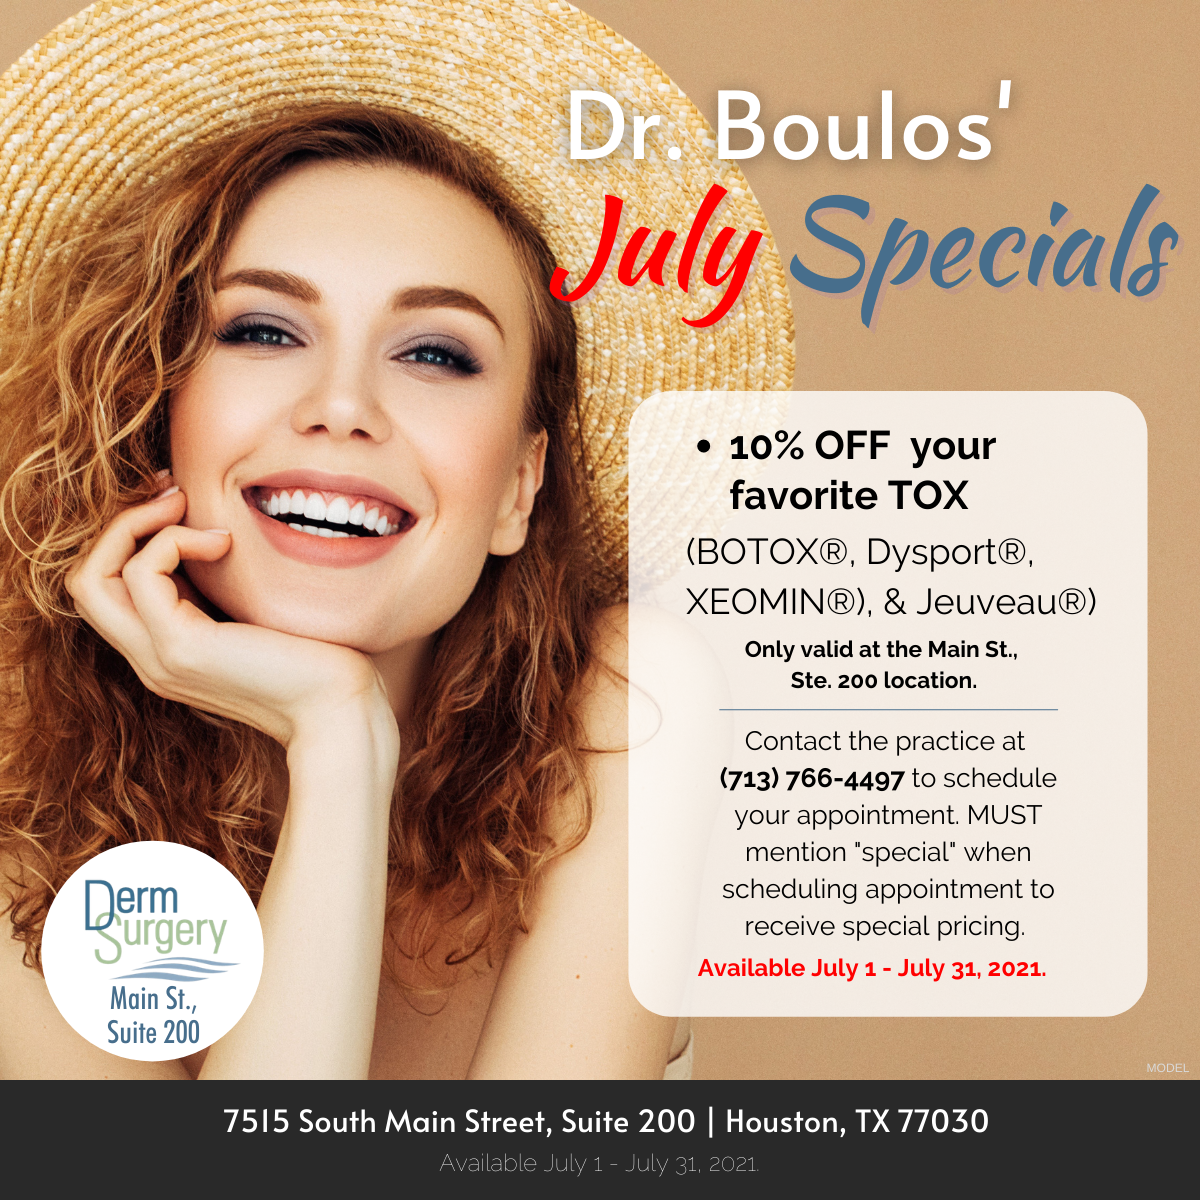 Dr. Boulos' July Specials